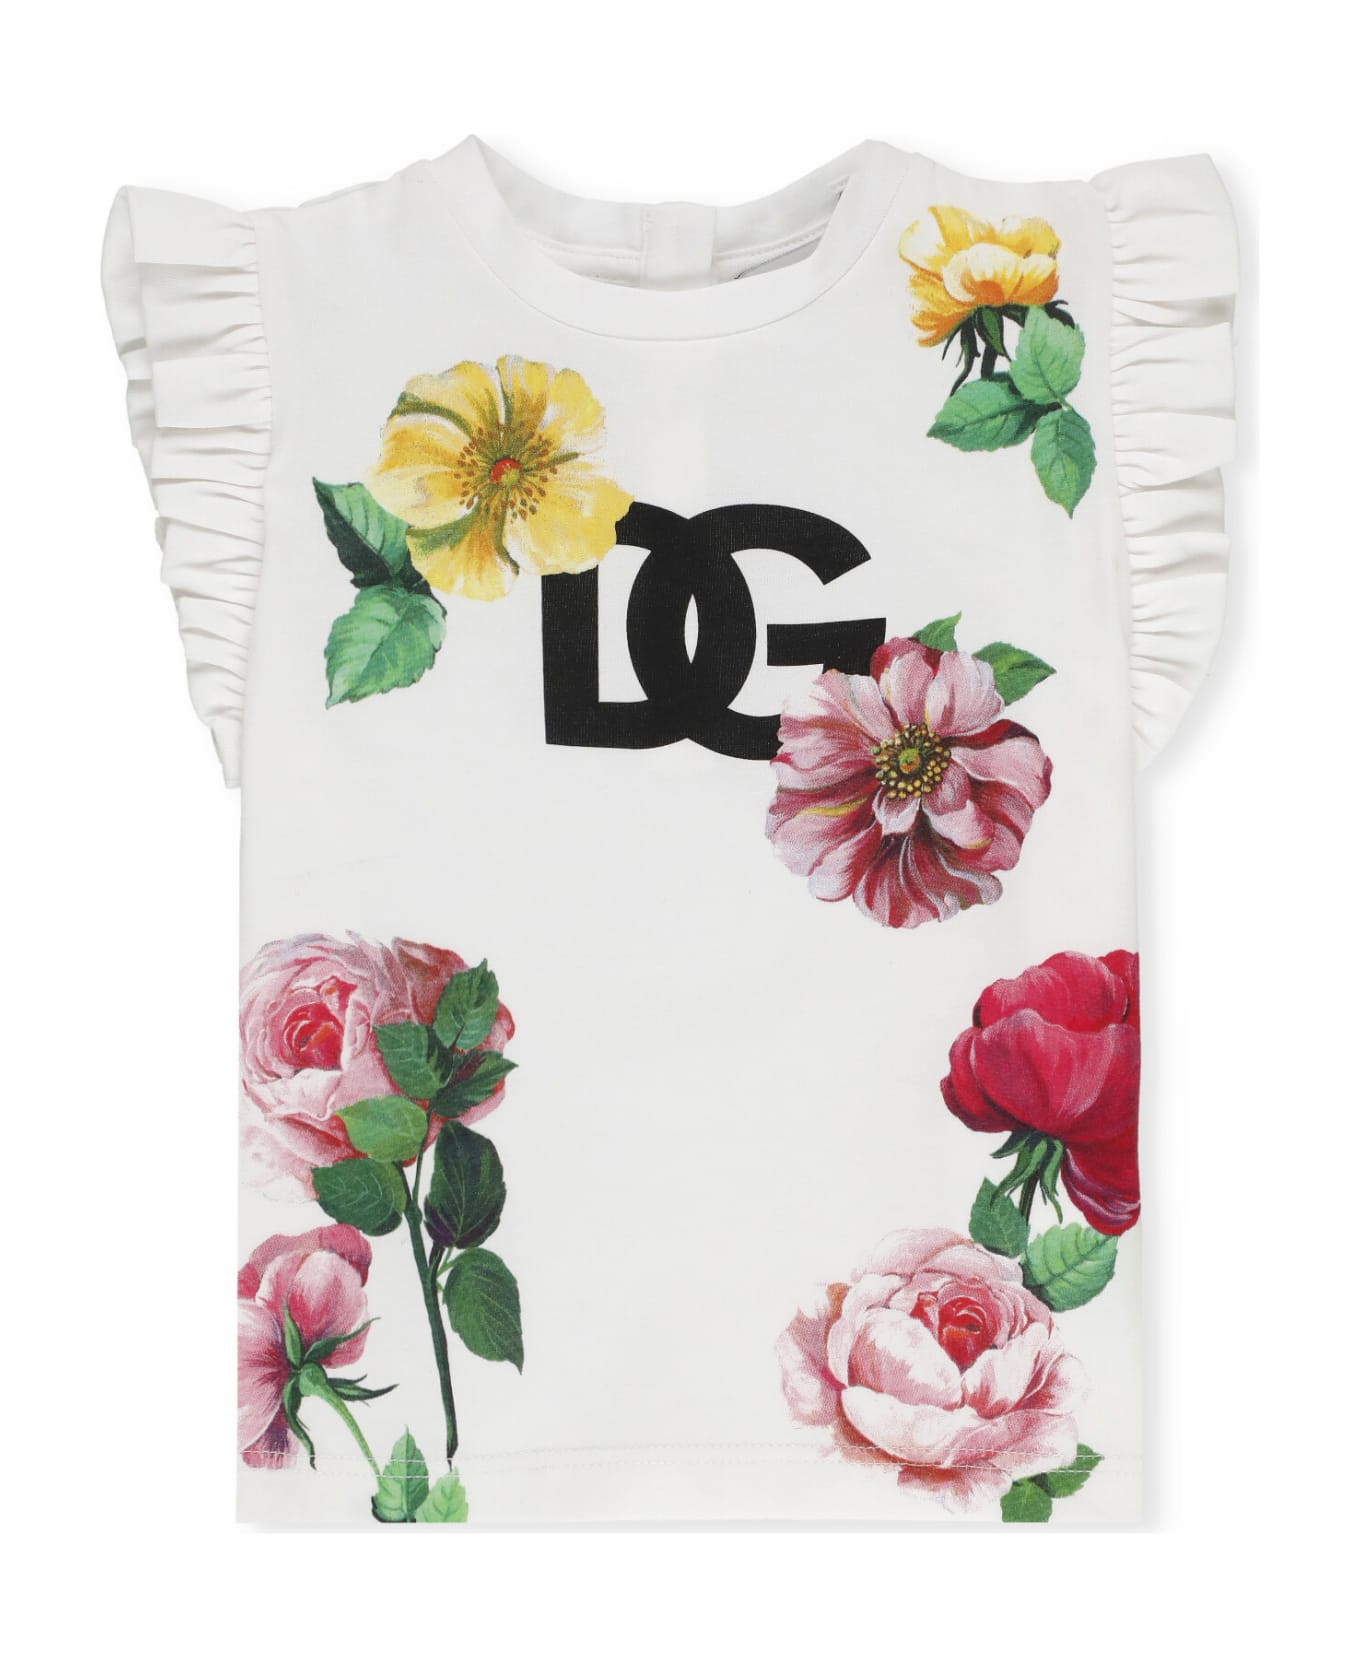 Dolce & Gabbana T-shirt With Logo - White